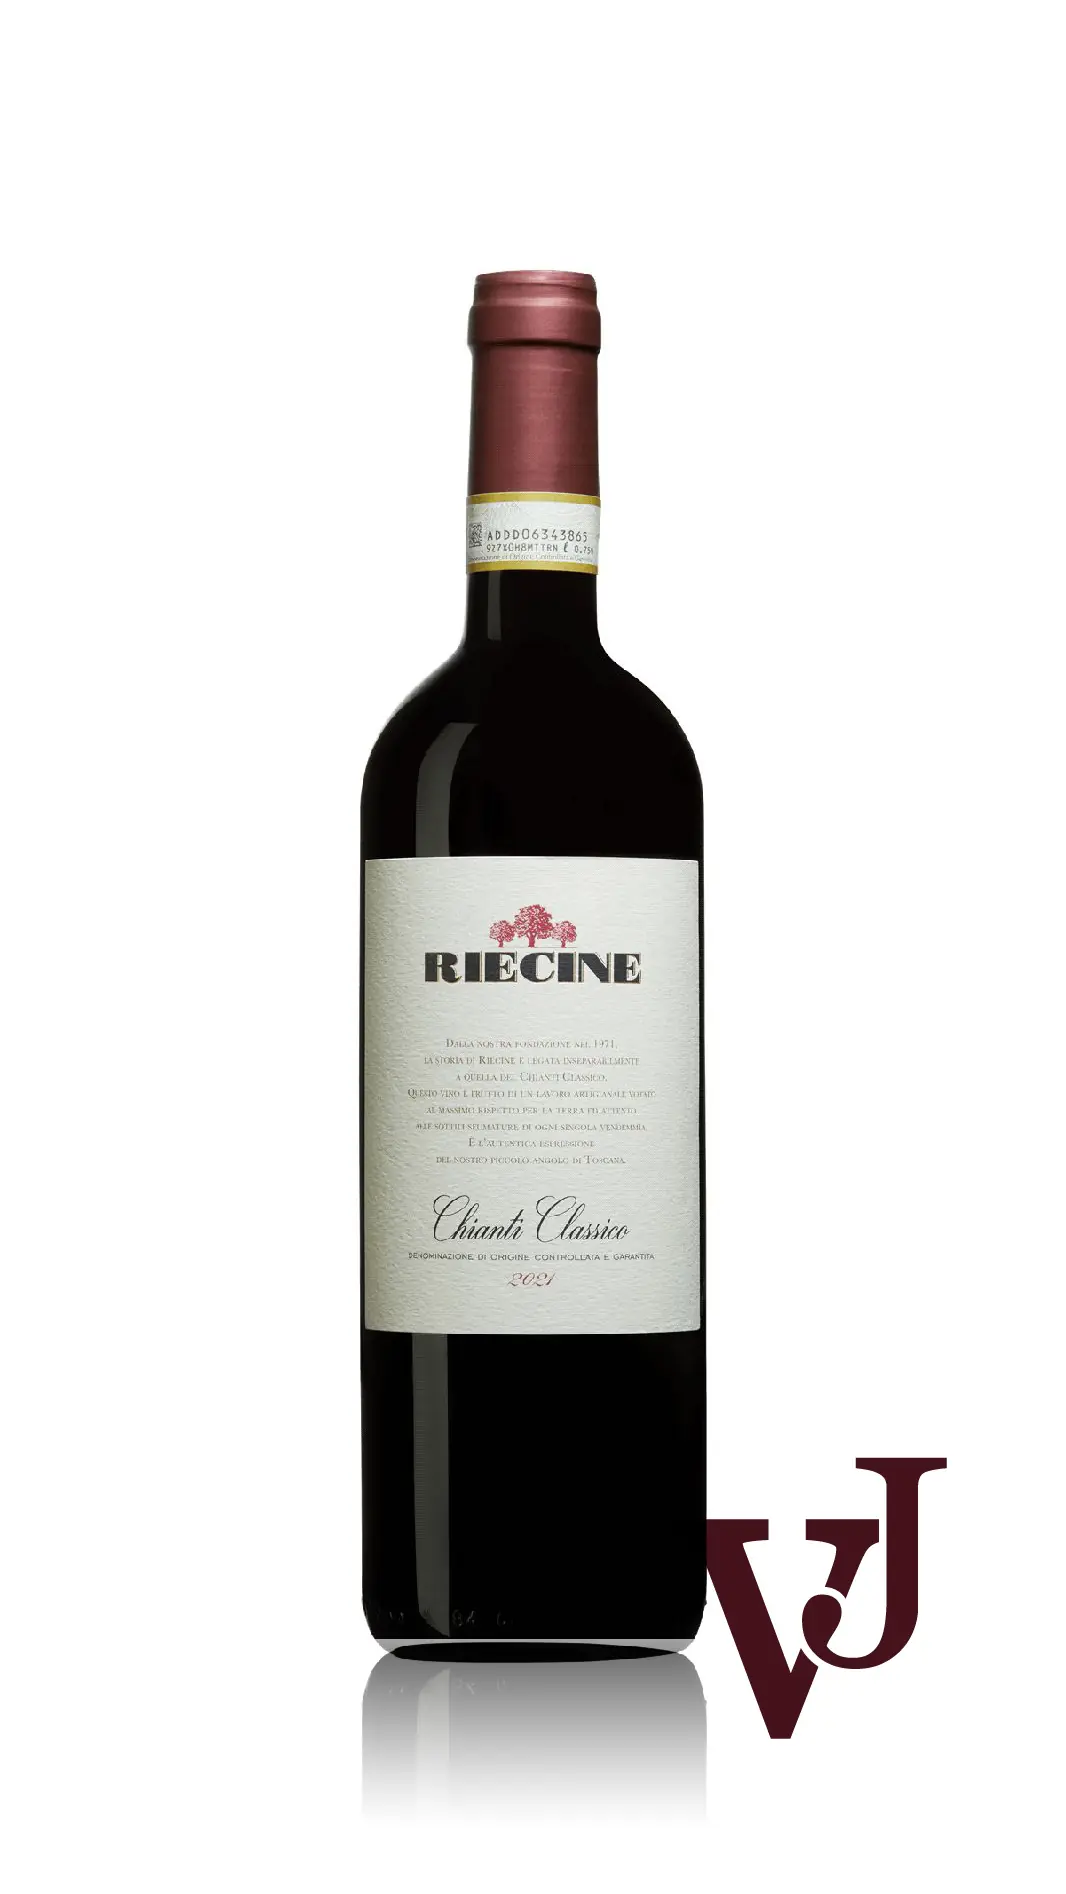 Rött vin - Chianti Classico Riecine 2021 artikel nummer 9410501 från producenten Riecine från Italien - Vinjournalen.se